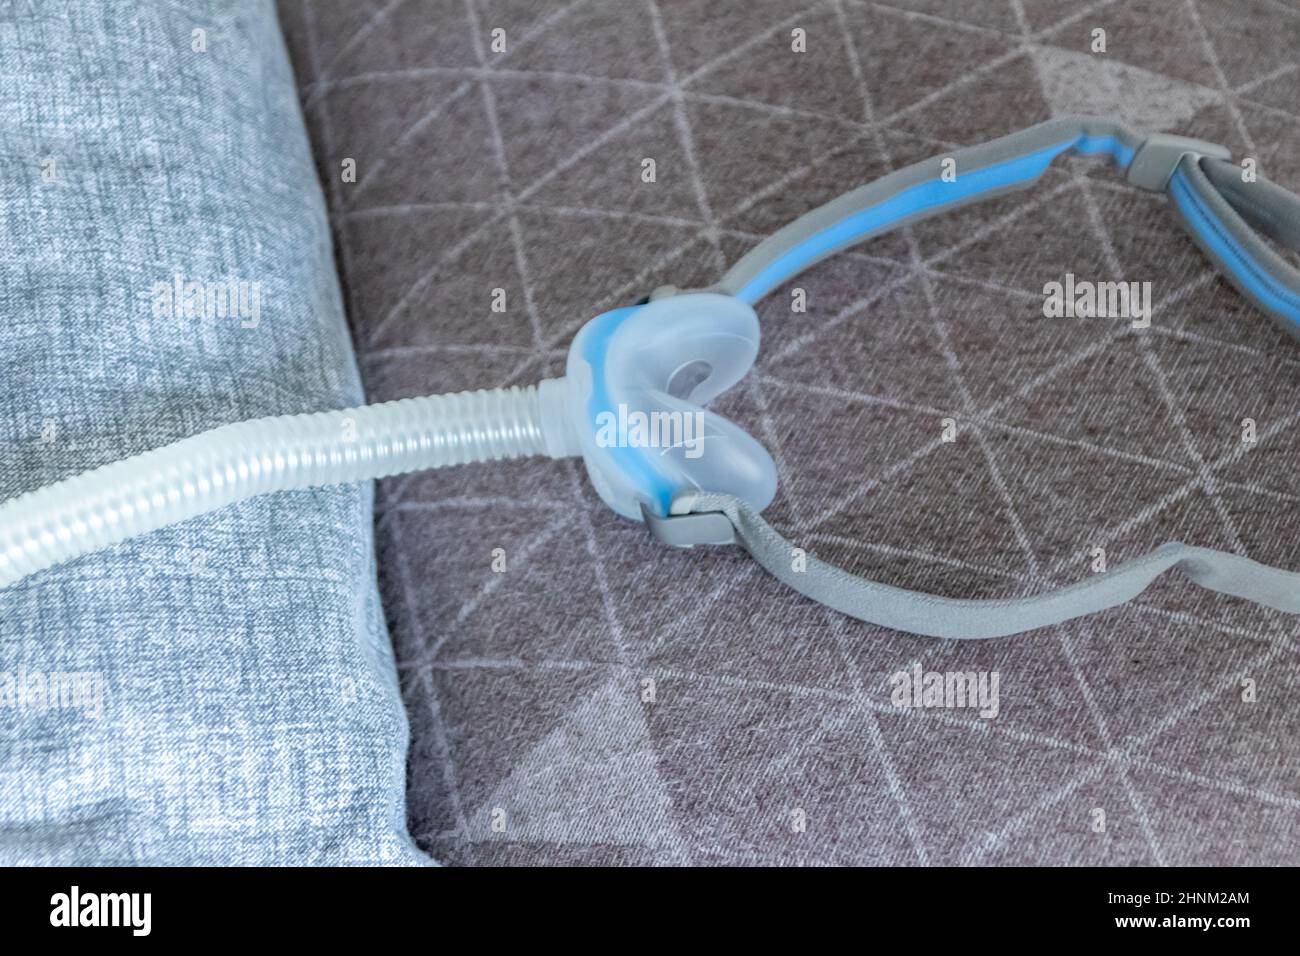 CPAP-Maske gegen obstruktive Schlafapnoe hilft Patienten Atemschutzmaske Kopfbedeckung Clip für Nase und Rachen Atemmedikamente mit cpap-Maschine gegen Schnarchen und Schlafstörungen leichter atmen Stockfoto